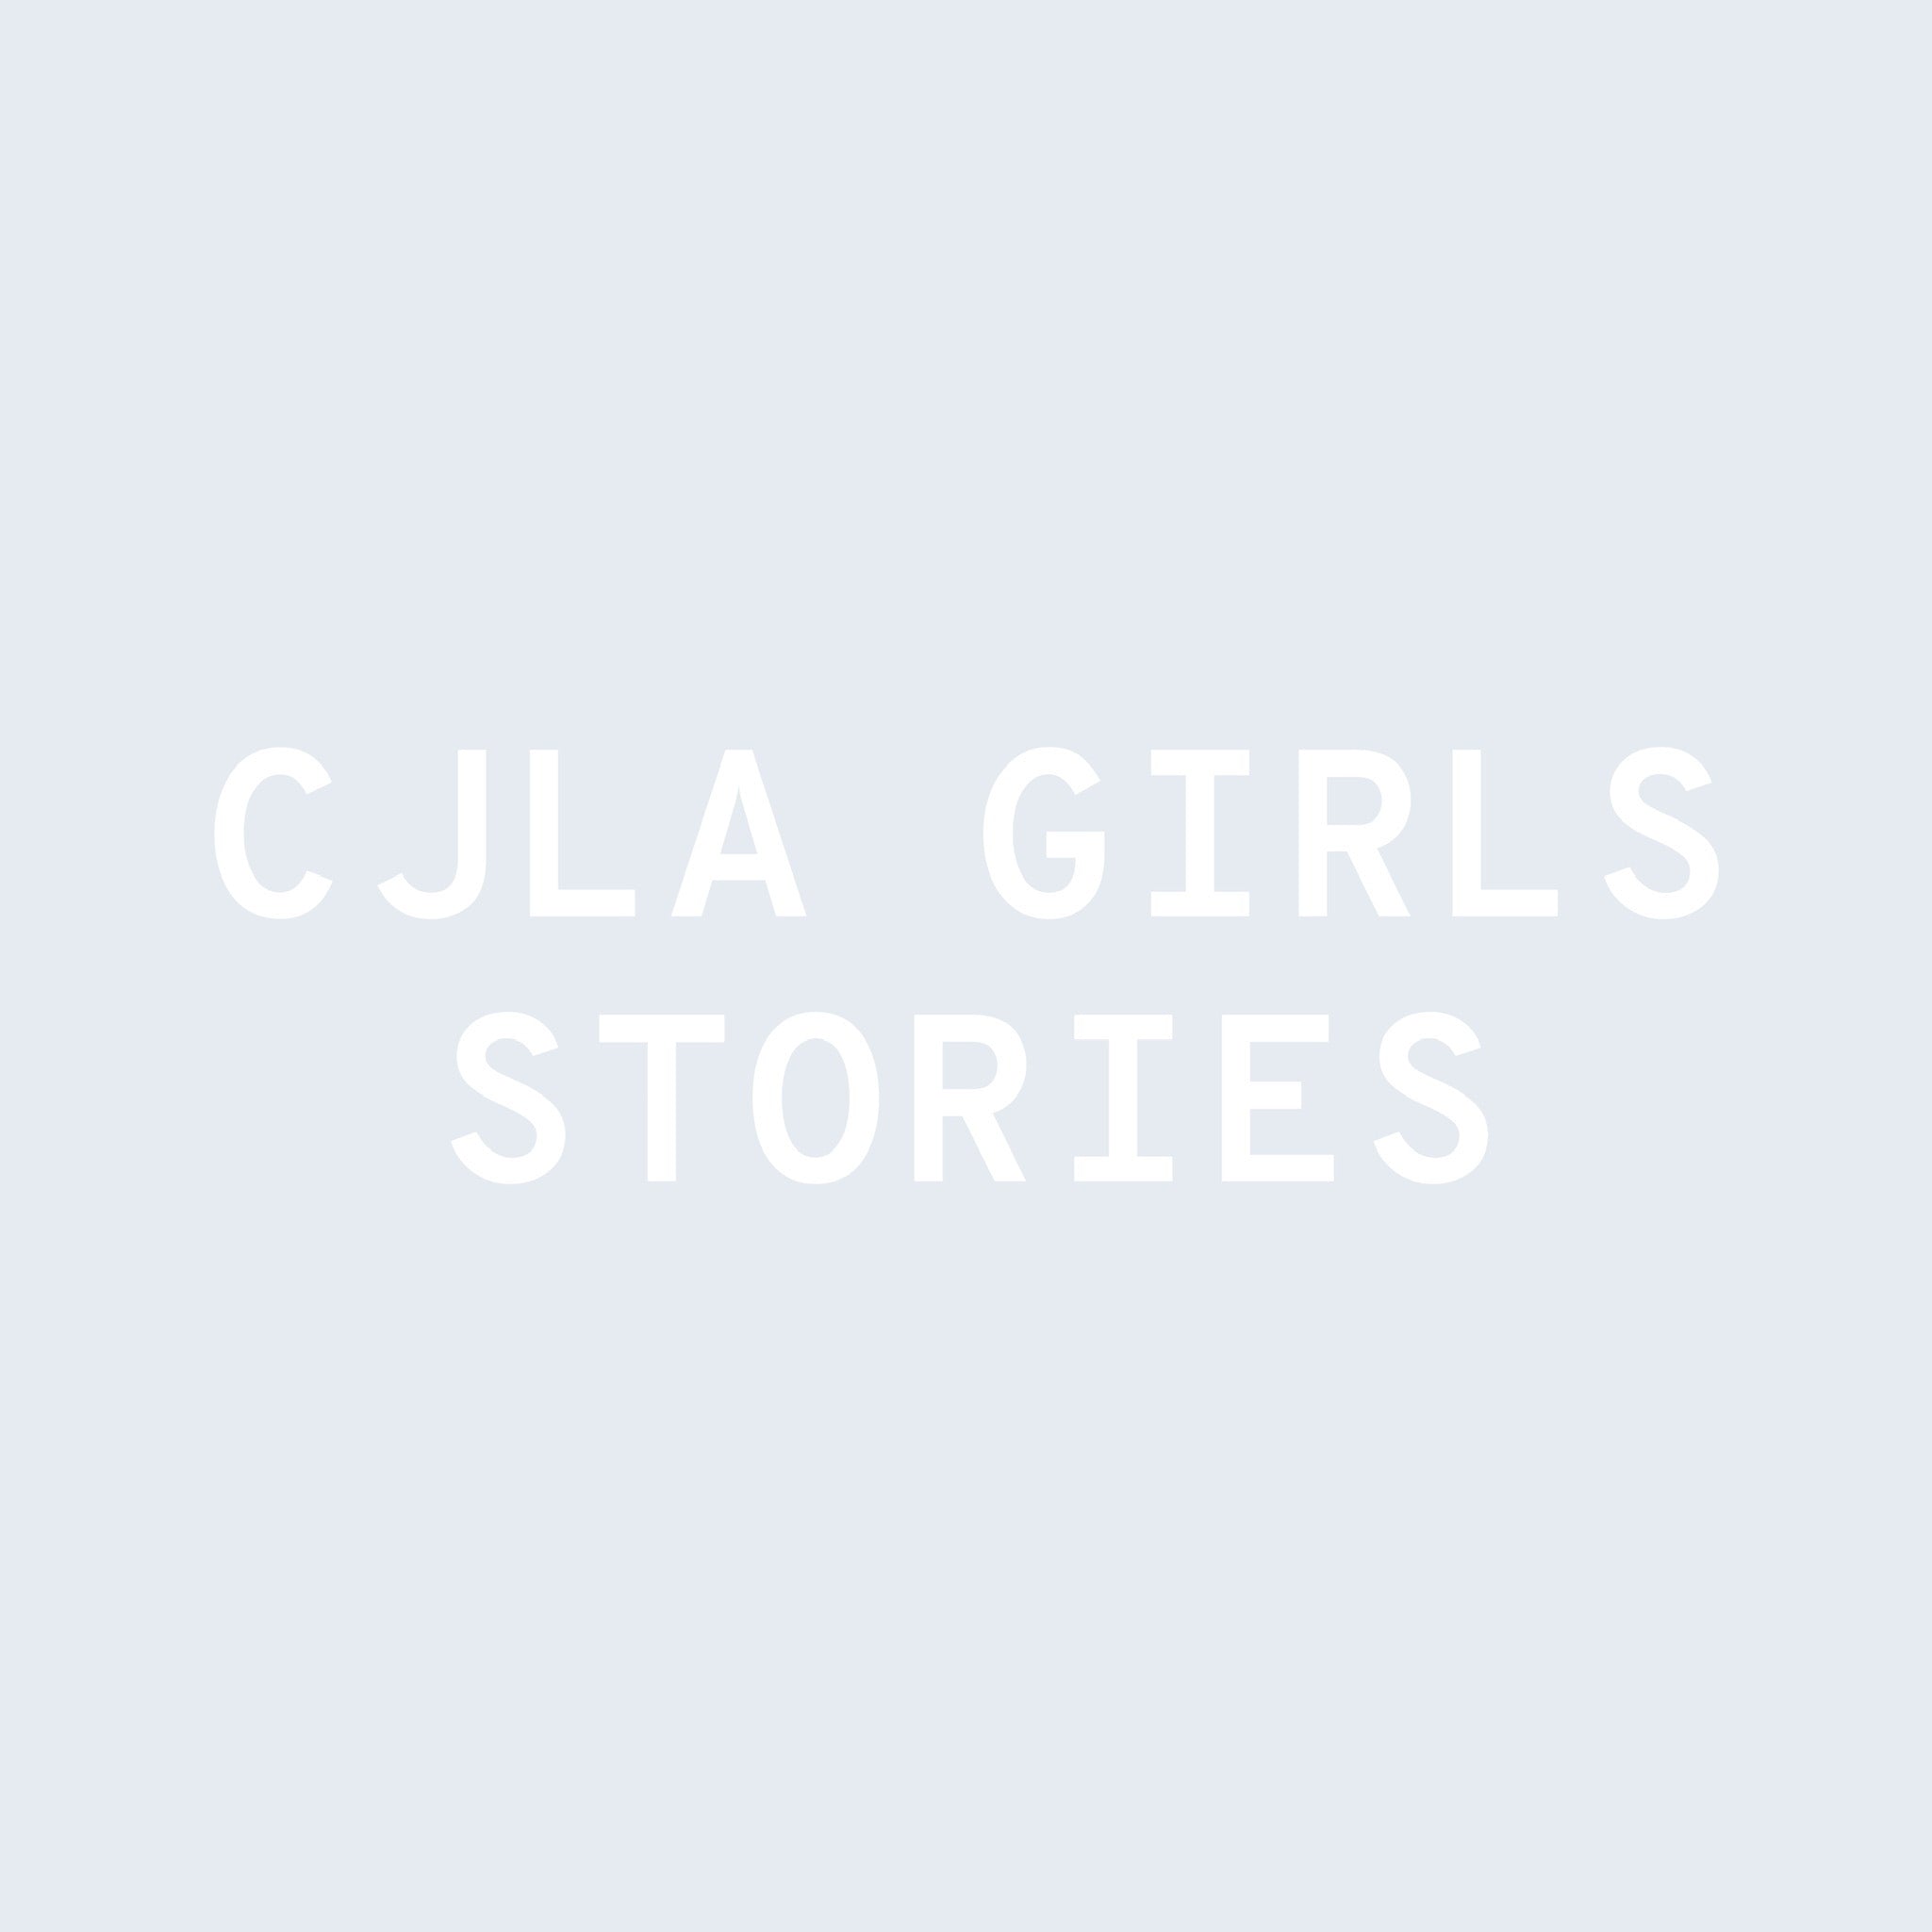 CJLA Girls Story: Melanie Lopez